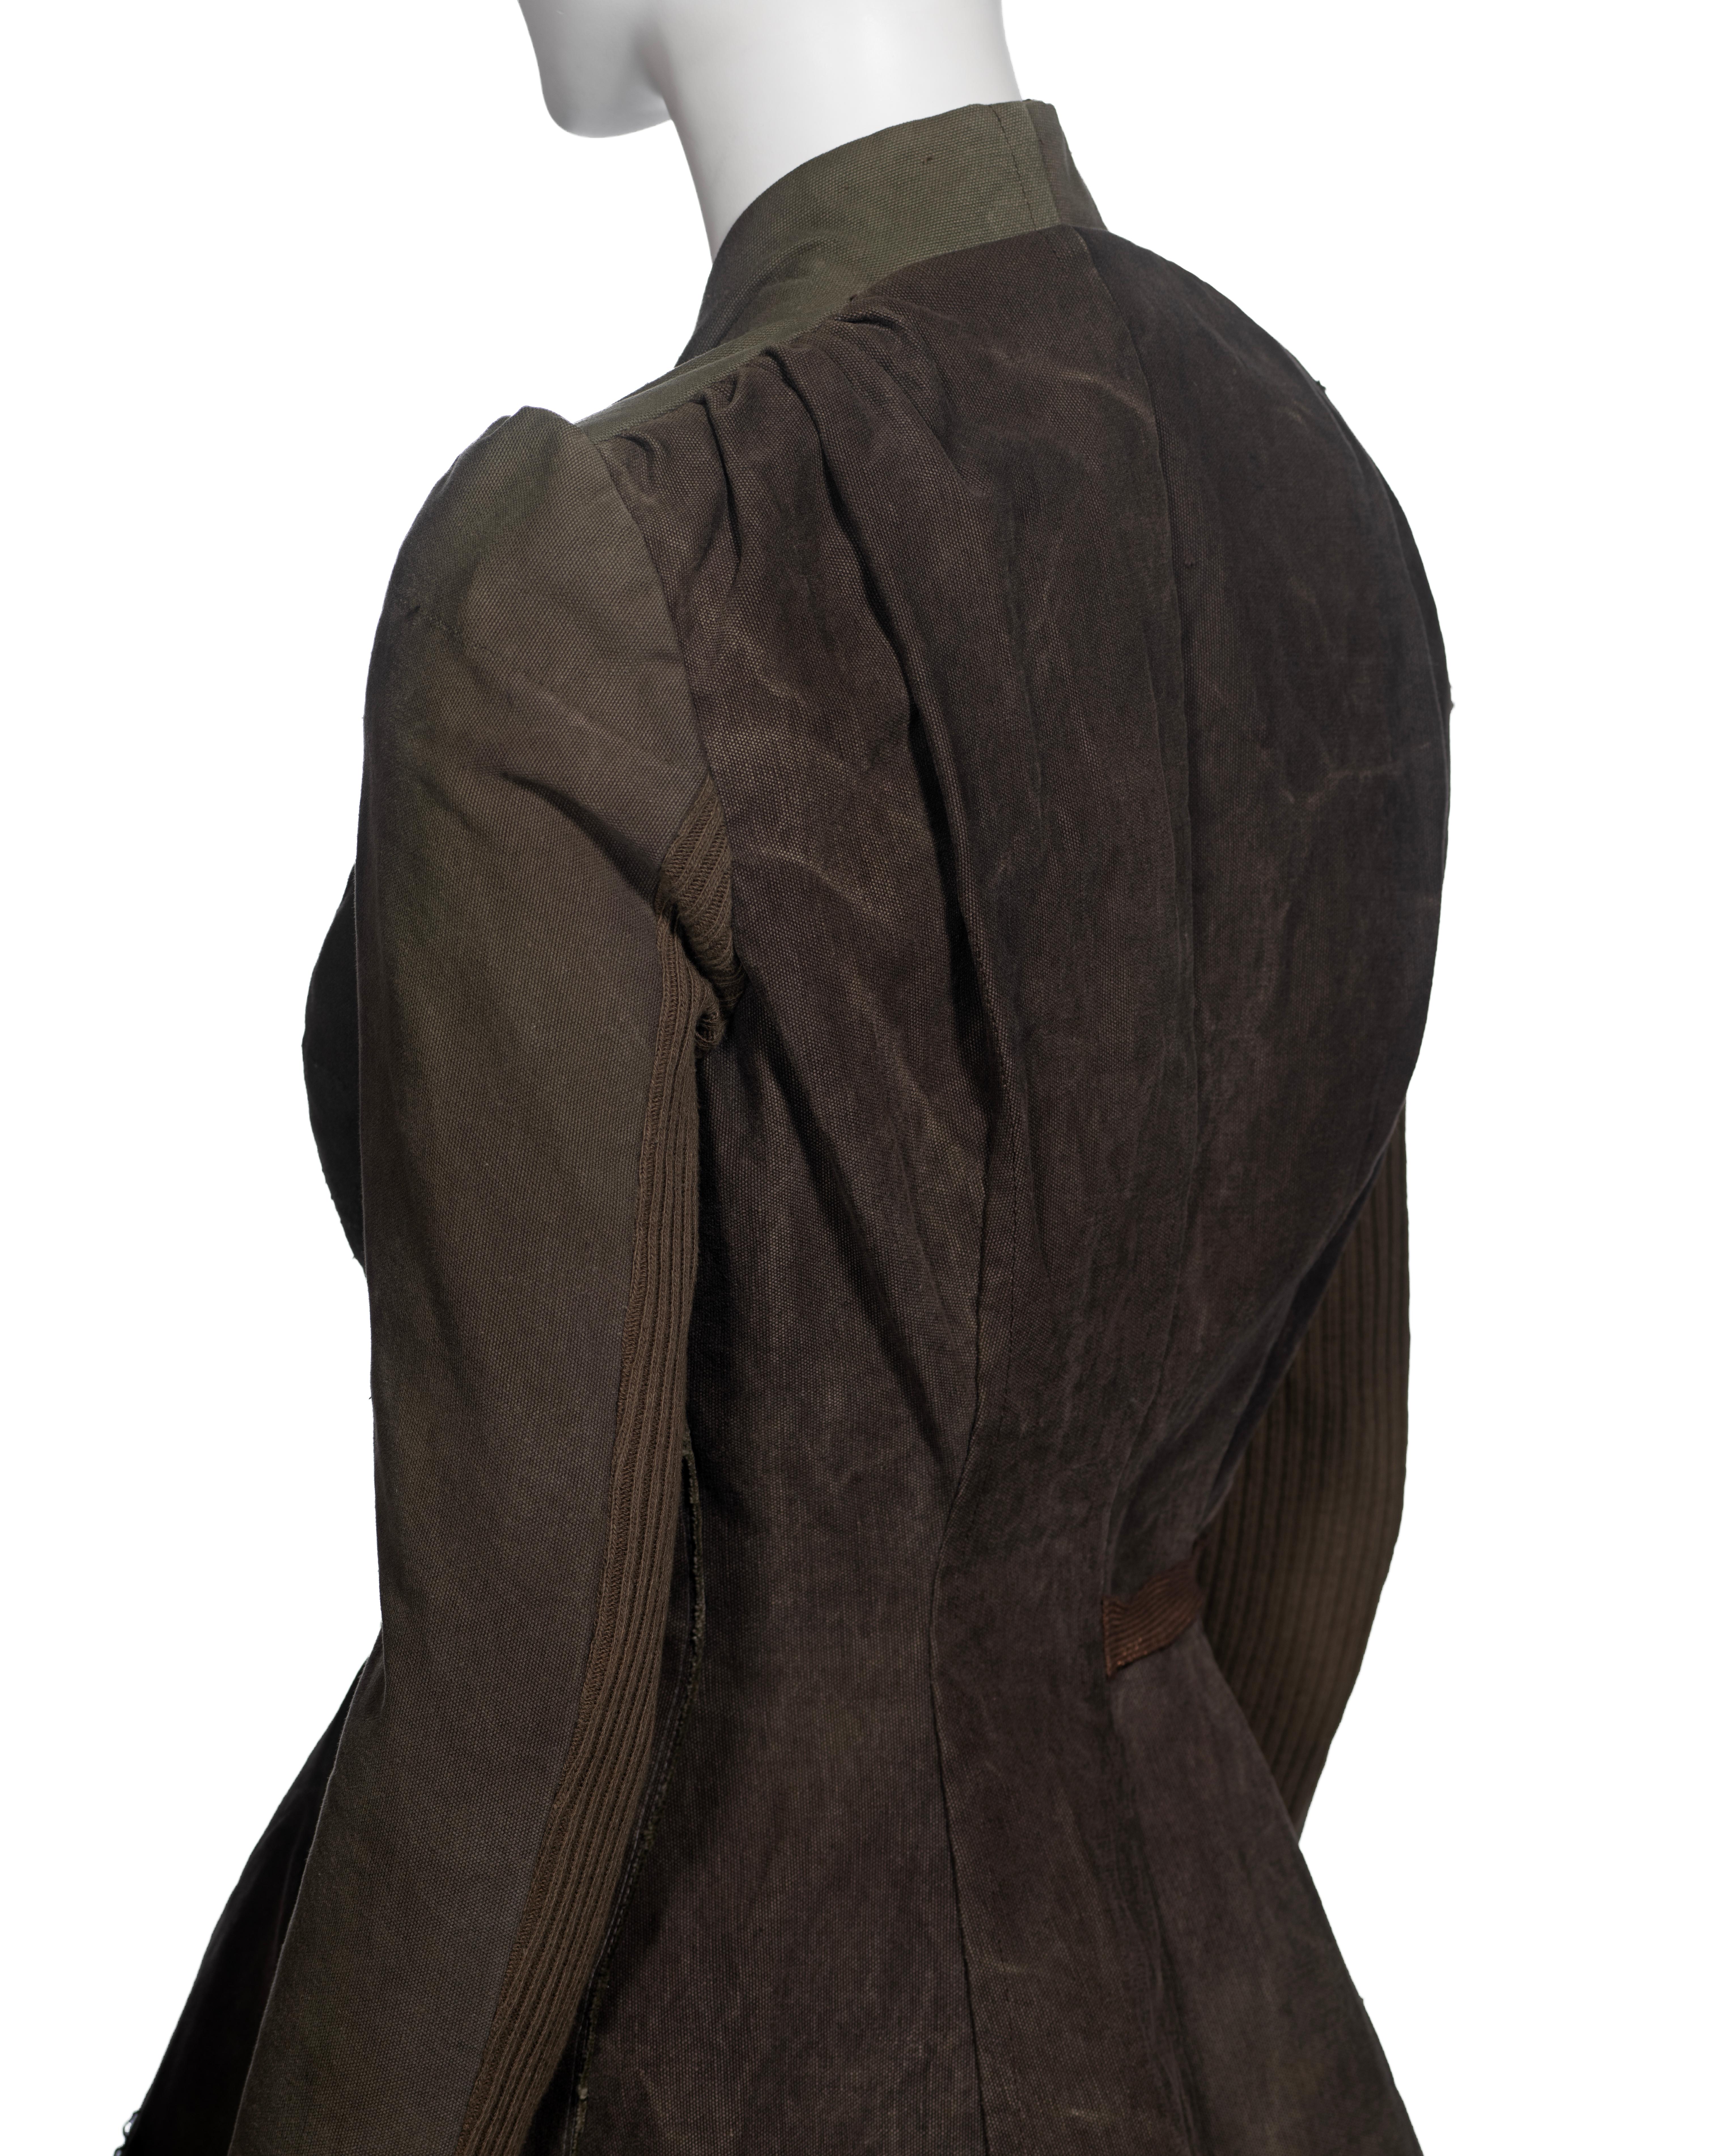 Veste de Rick Owens fabriquée à partir de sacs militaires déclassés, vers 1998 11